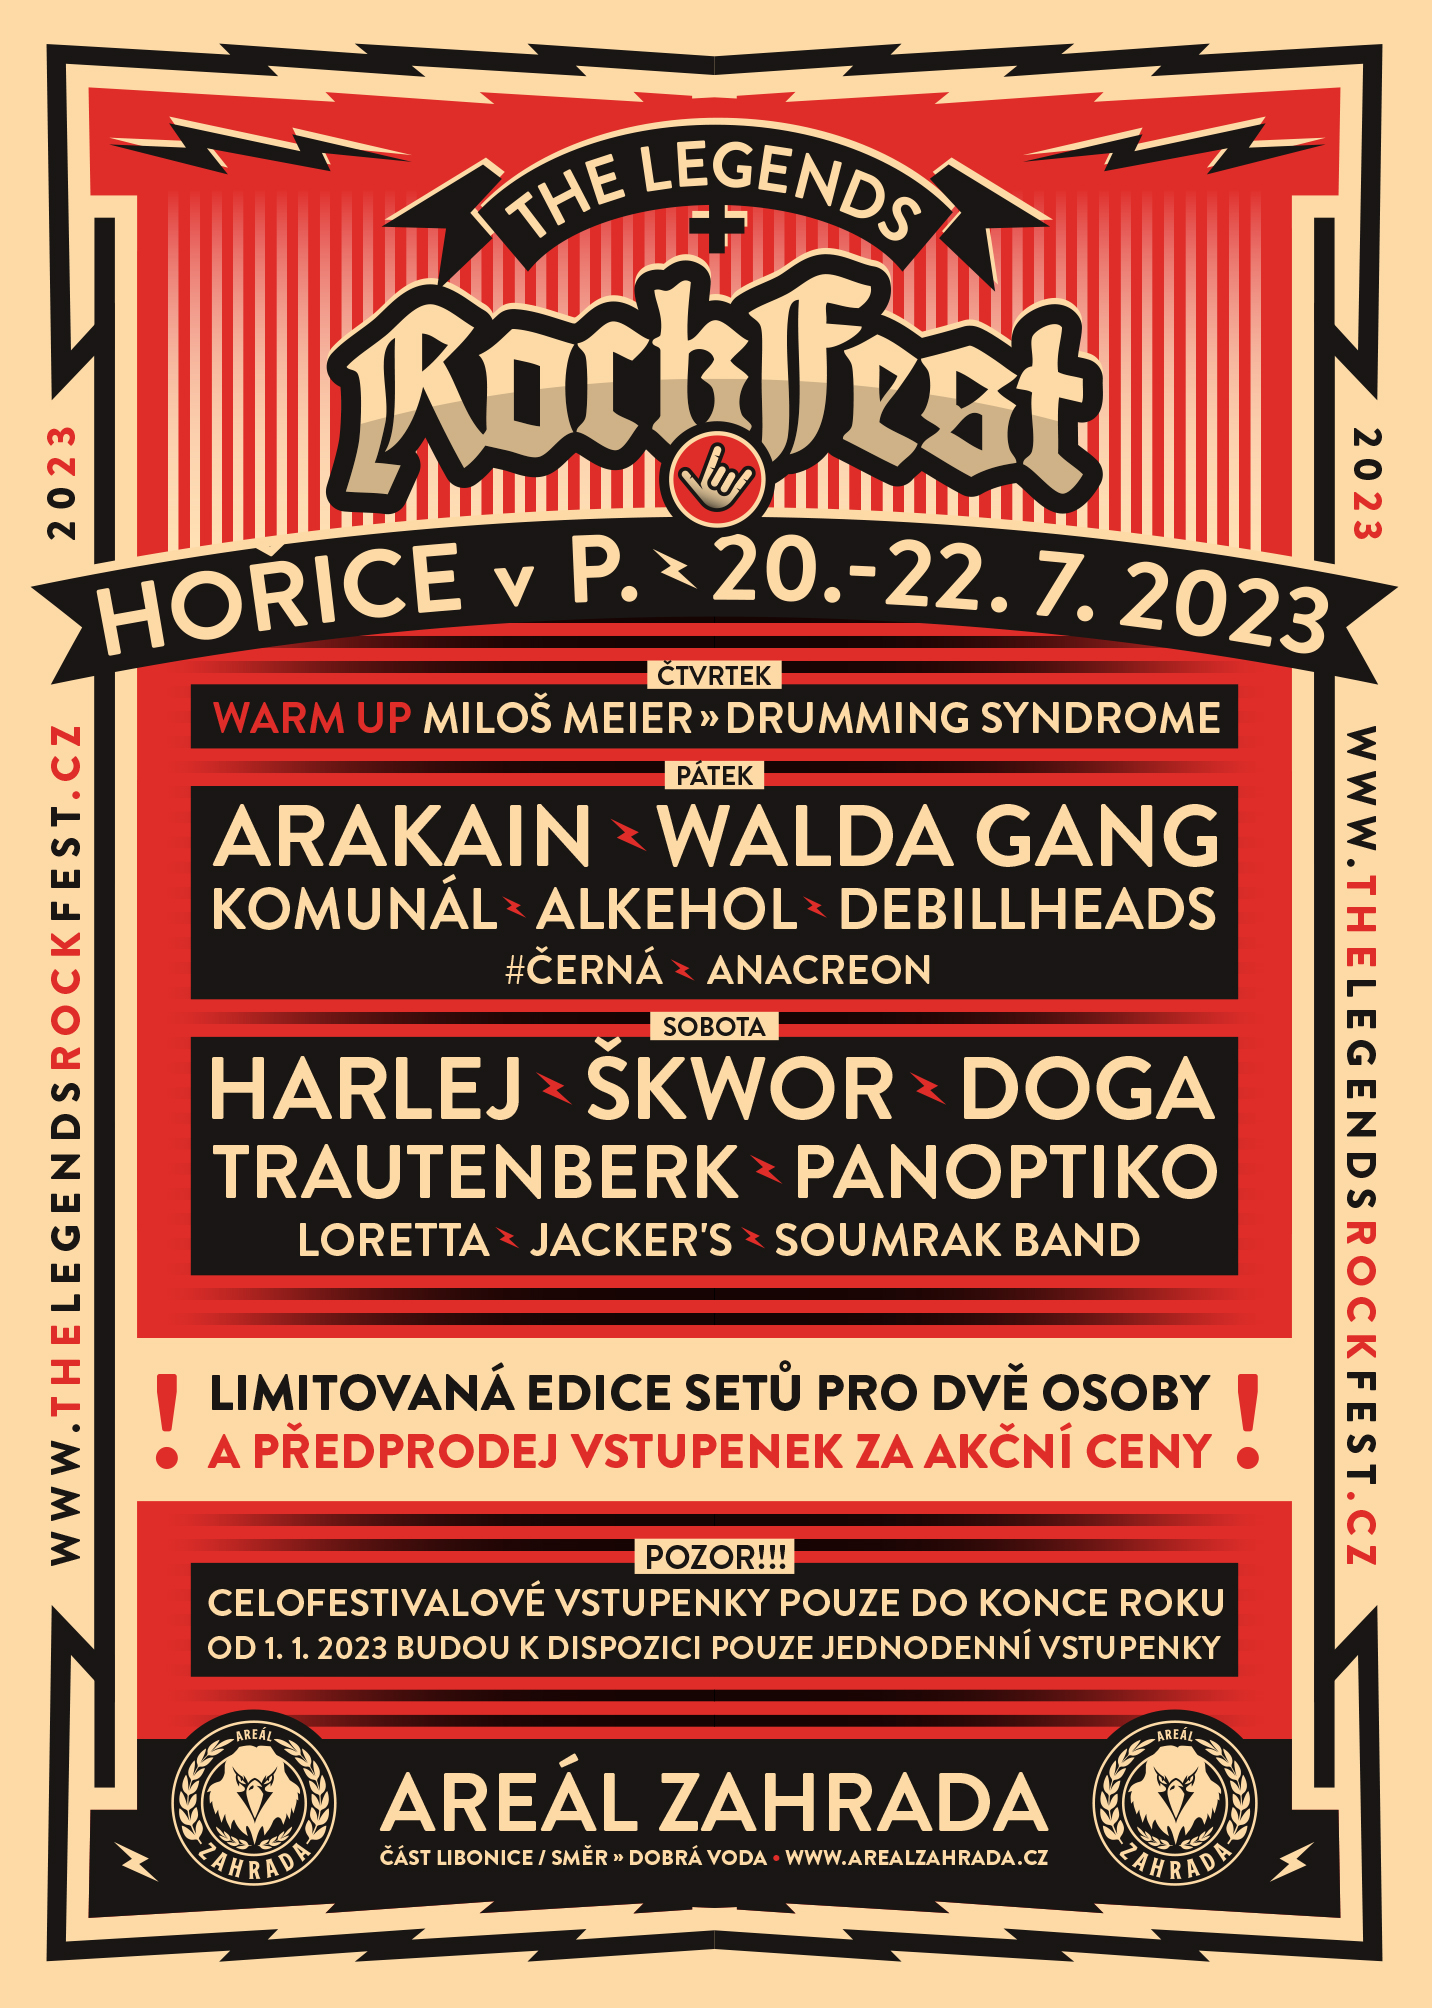 The Legends Rock Fest 2022